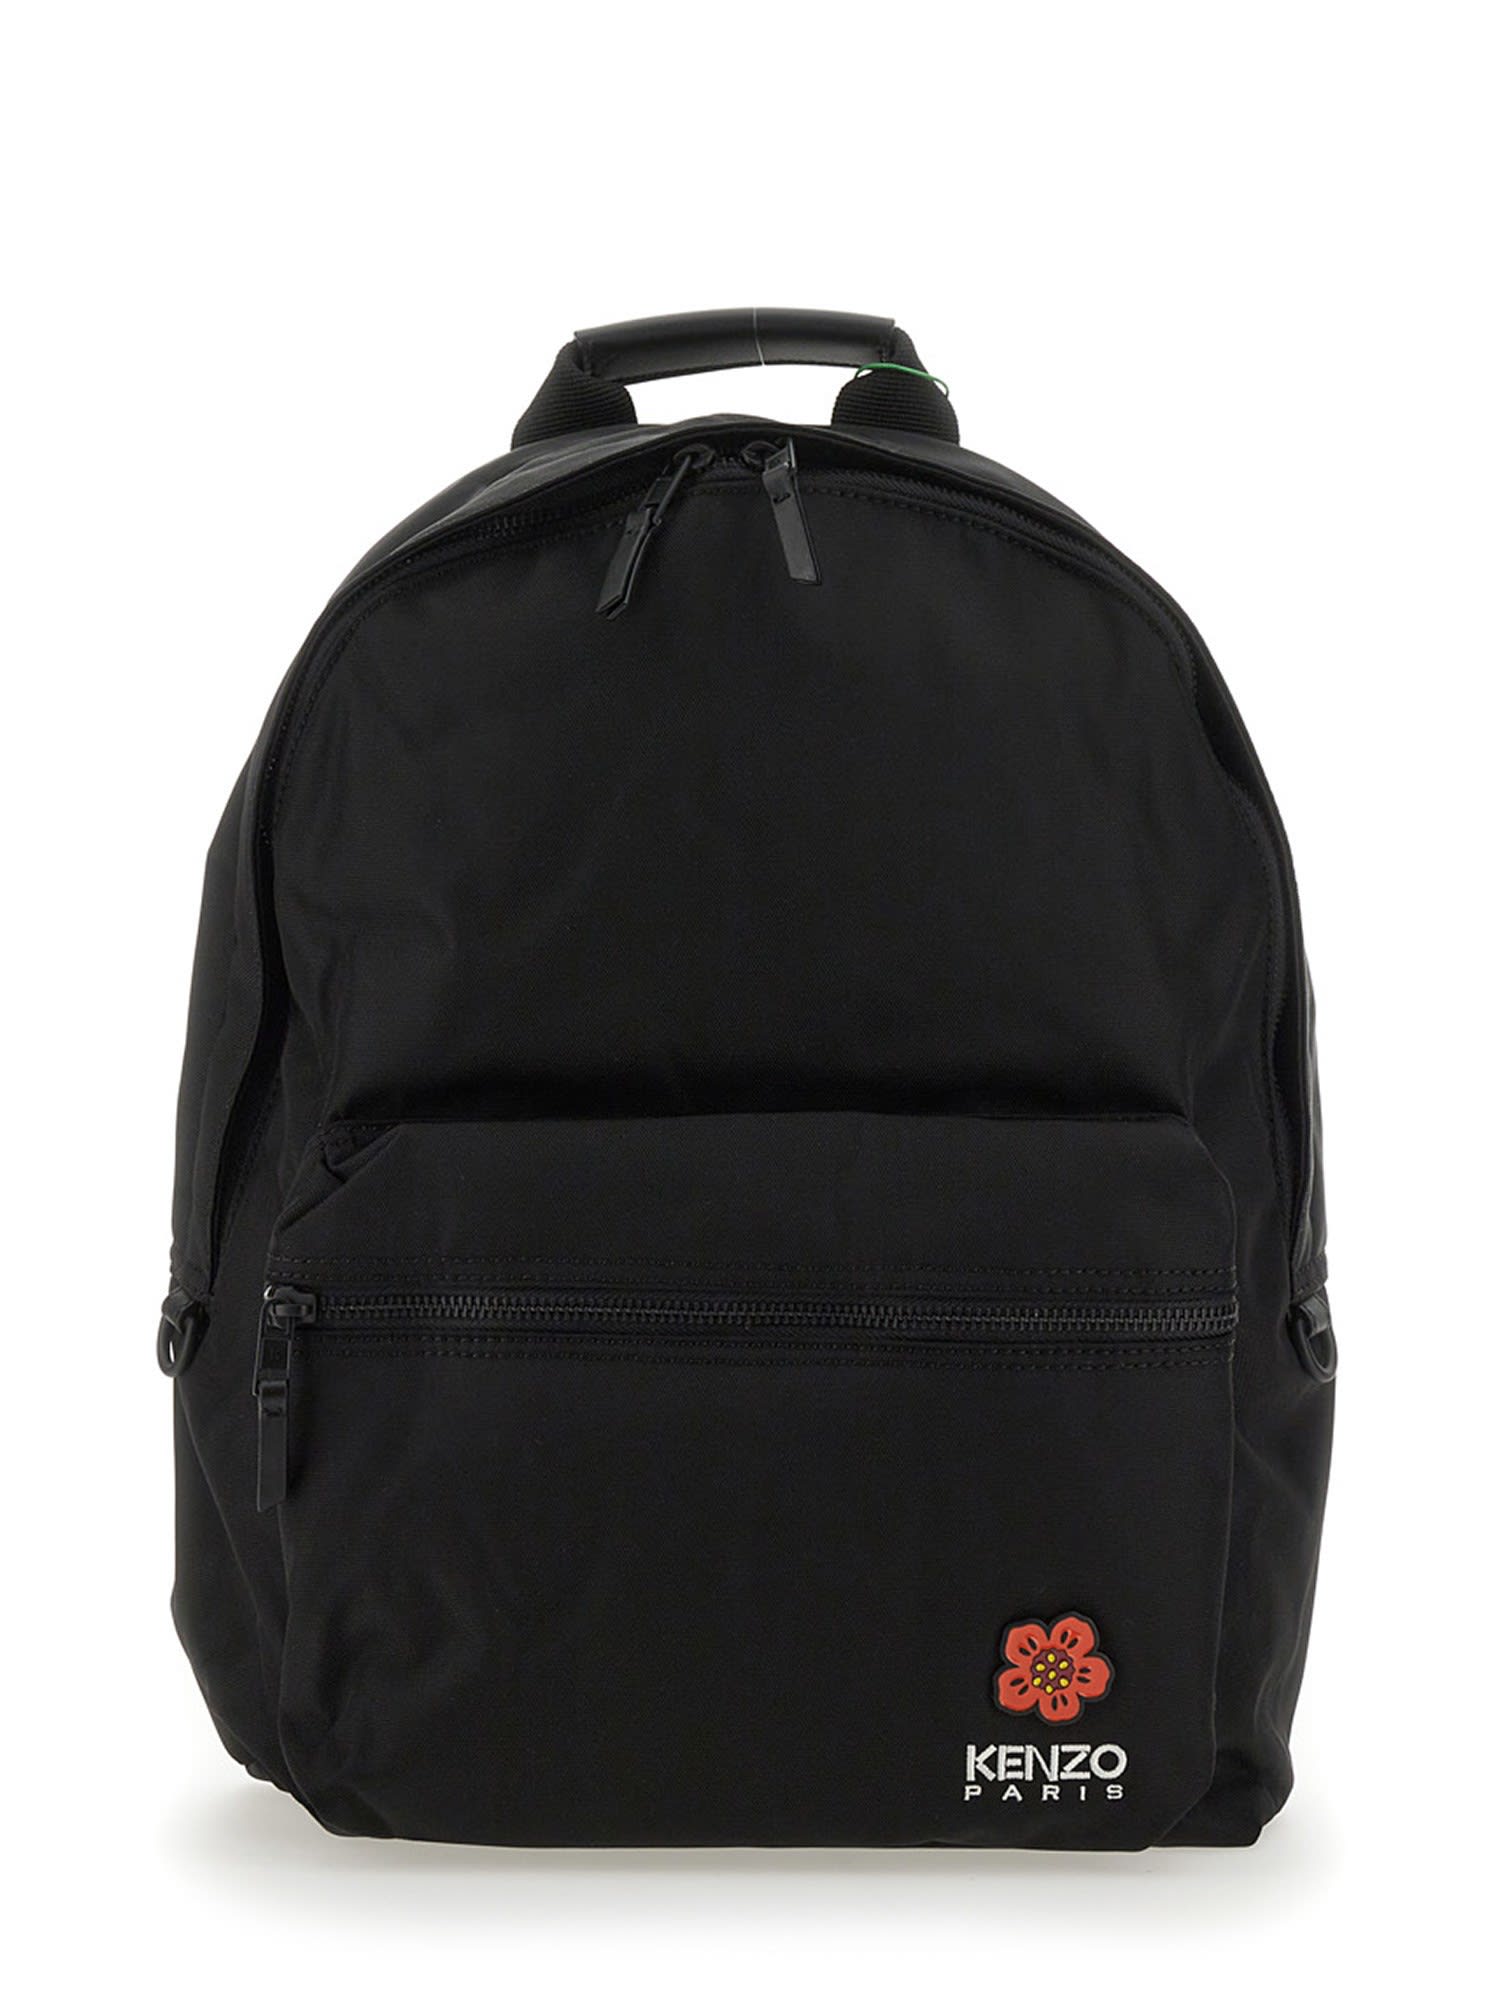 Kenzo Backpack With Logo